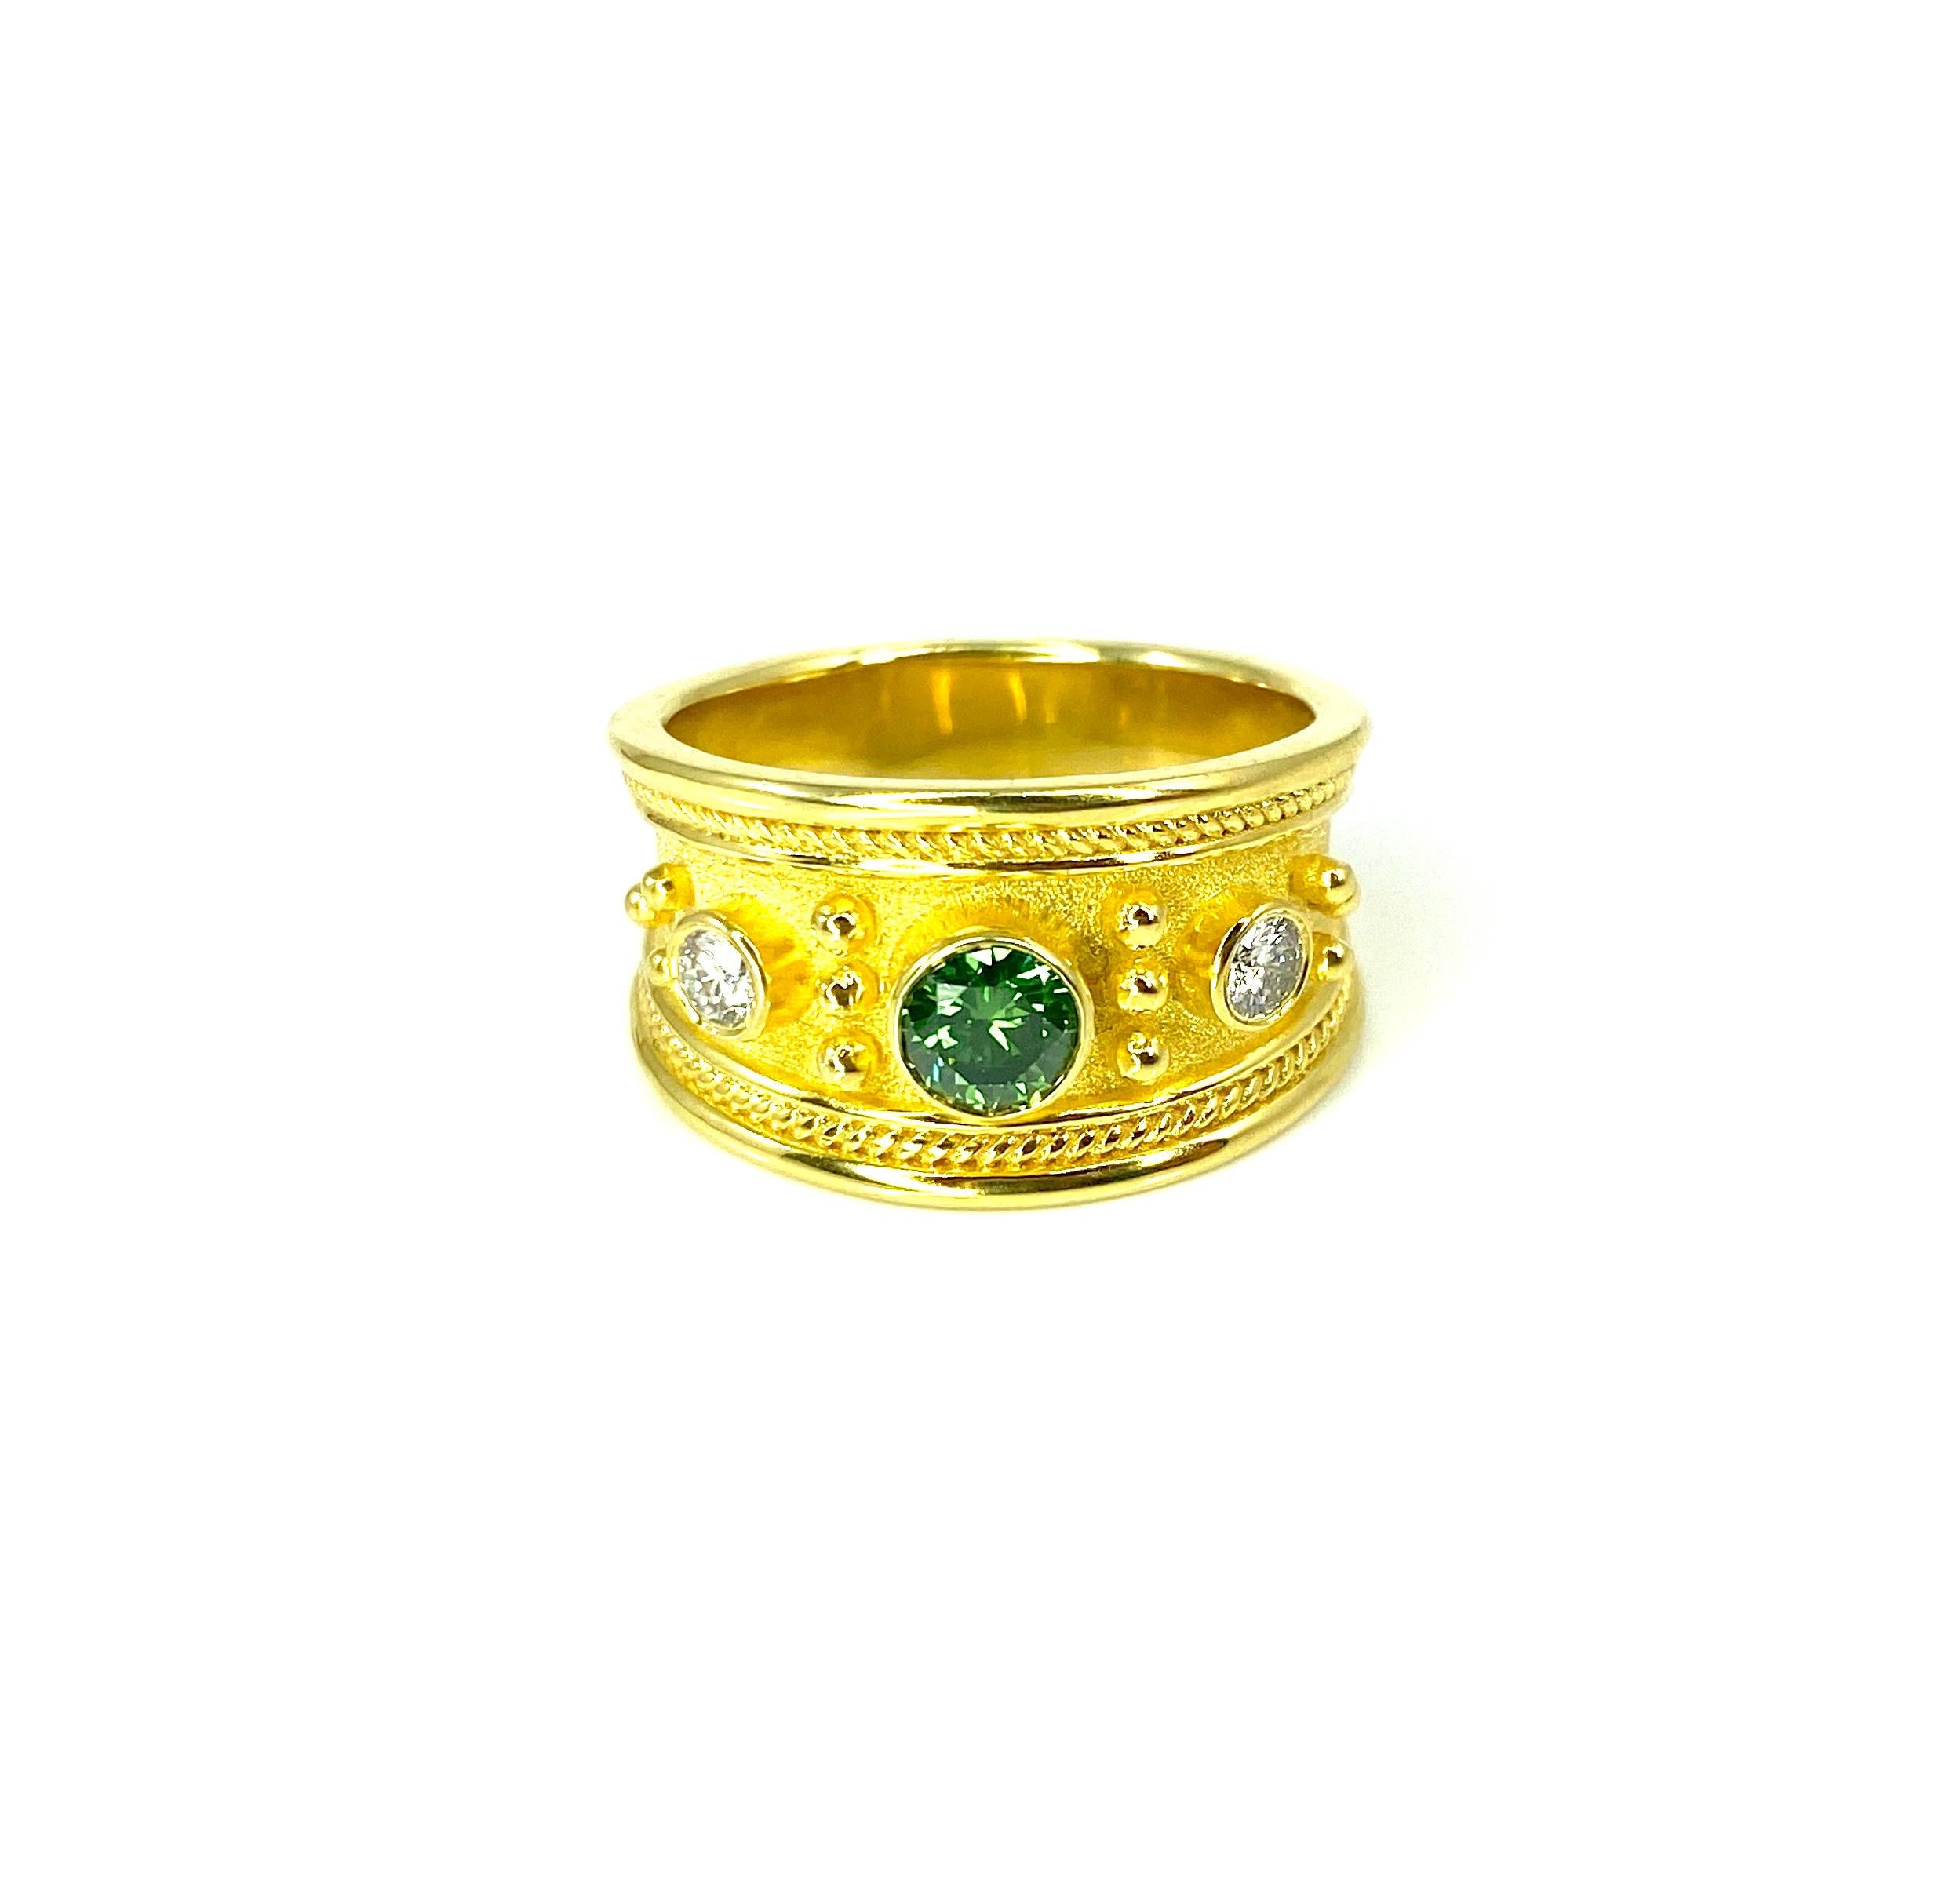 Georgios Collections präsentiert den Designerring S.Georgios, handgefertigt aus massivem 18 Karat Gelbgold. Der Ring ist unter dem Mikroskop mit gedrehten Drähten und Perlen aus 18 Karat Gelbgold verziert, die auf dem Hintergrund von byzantinischem